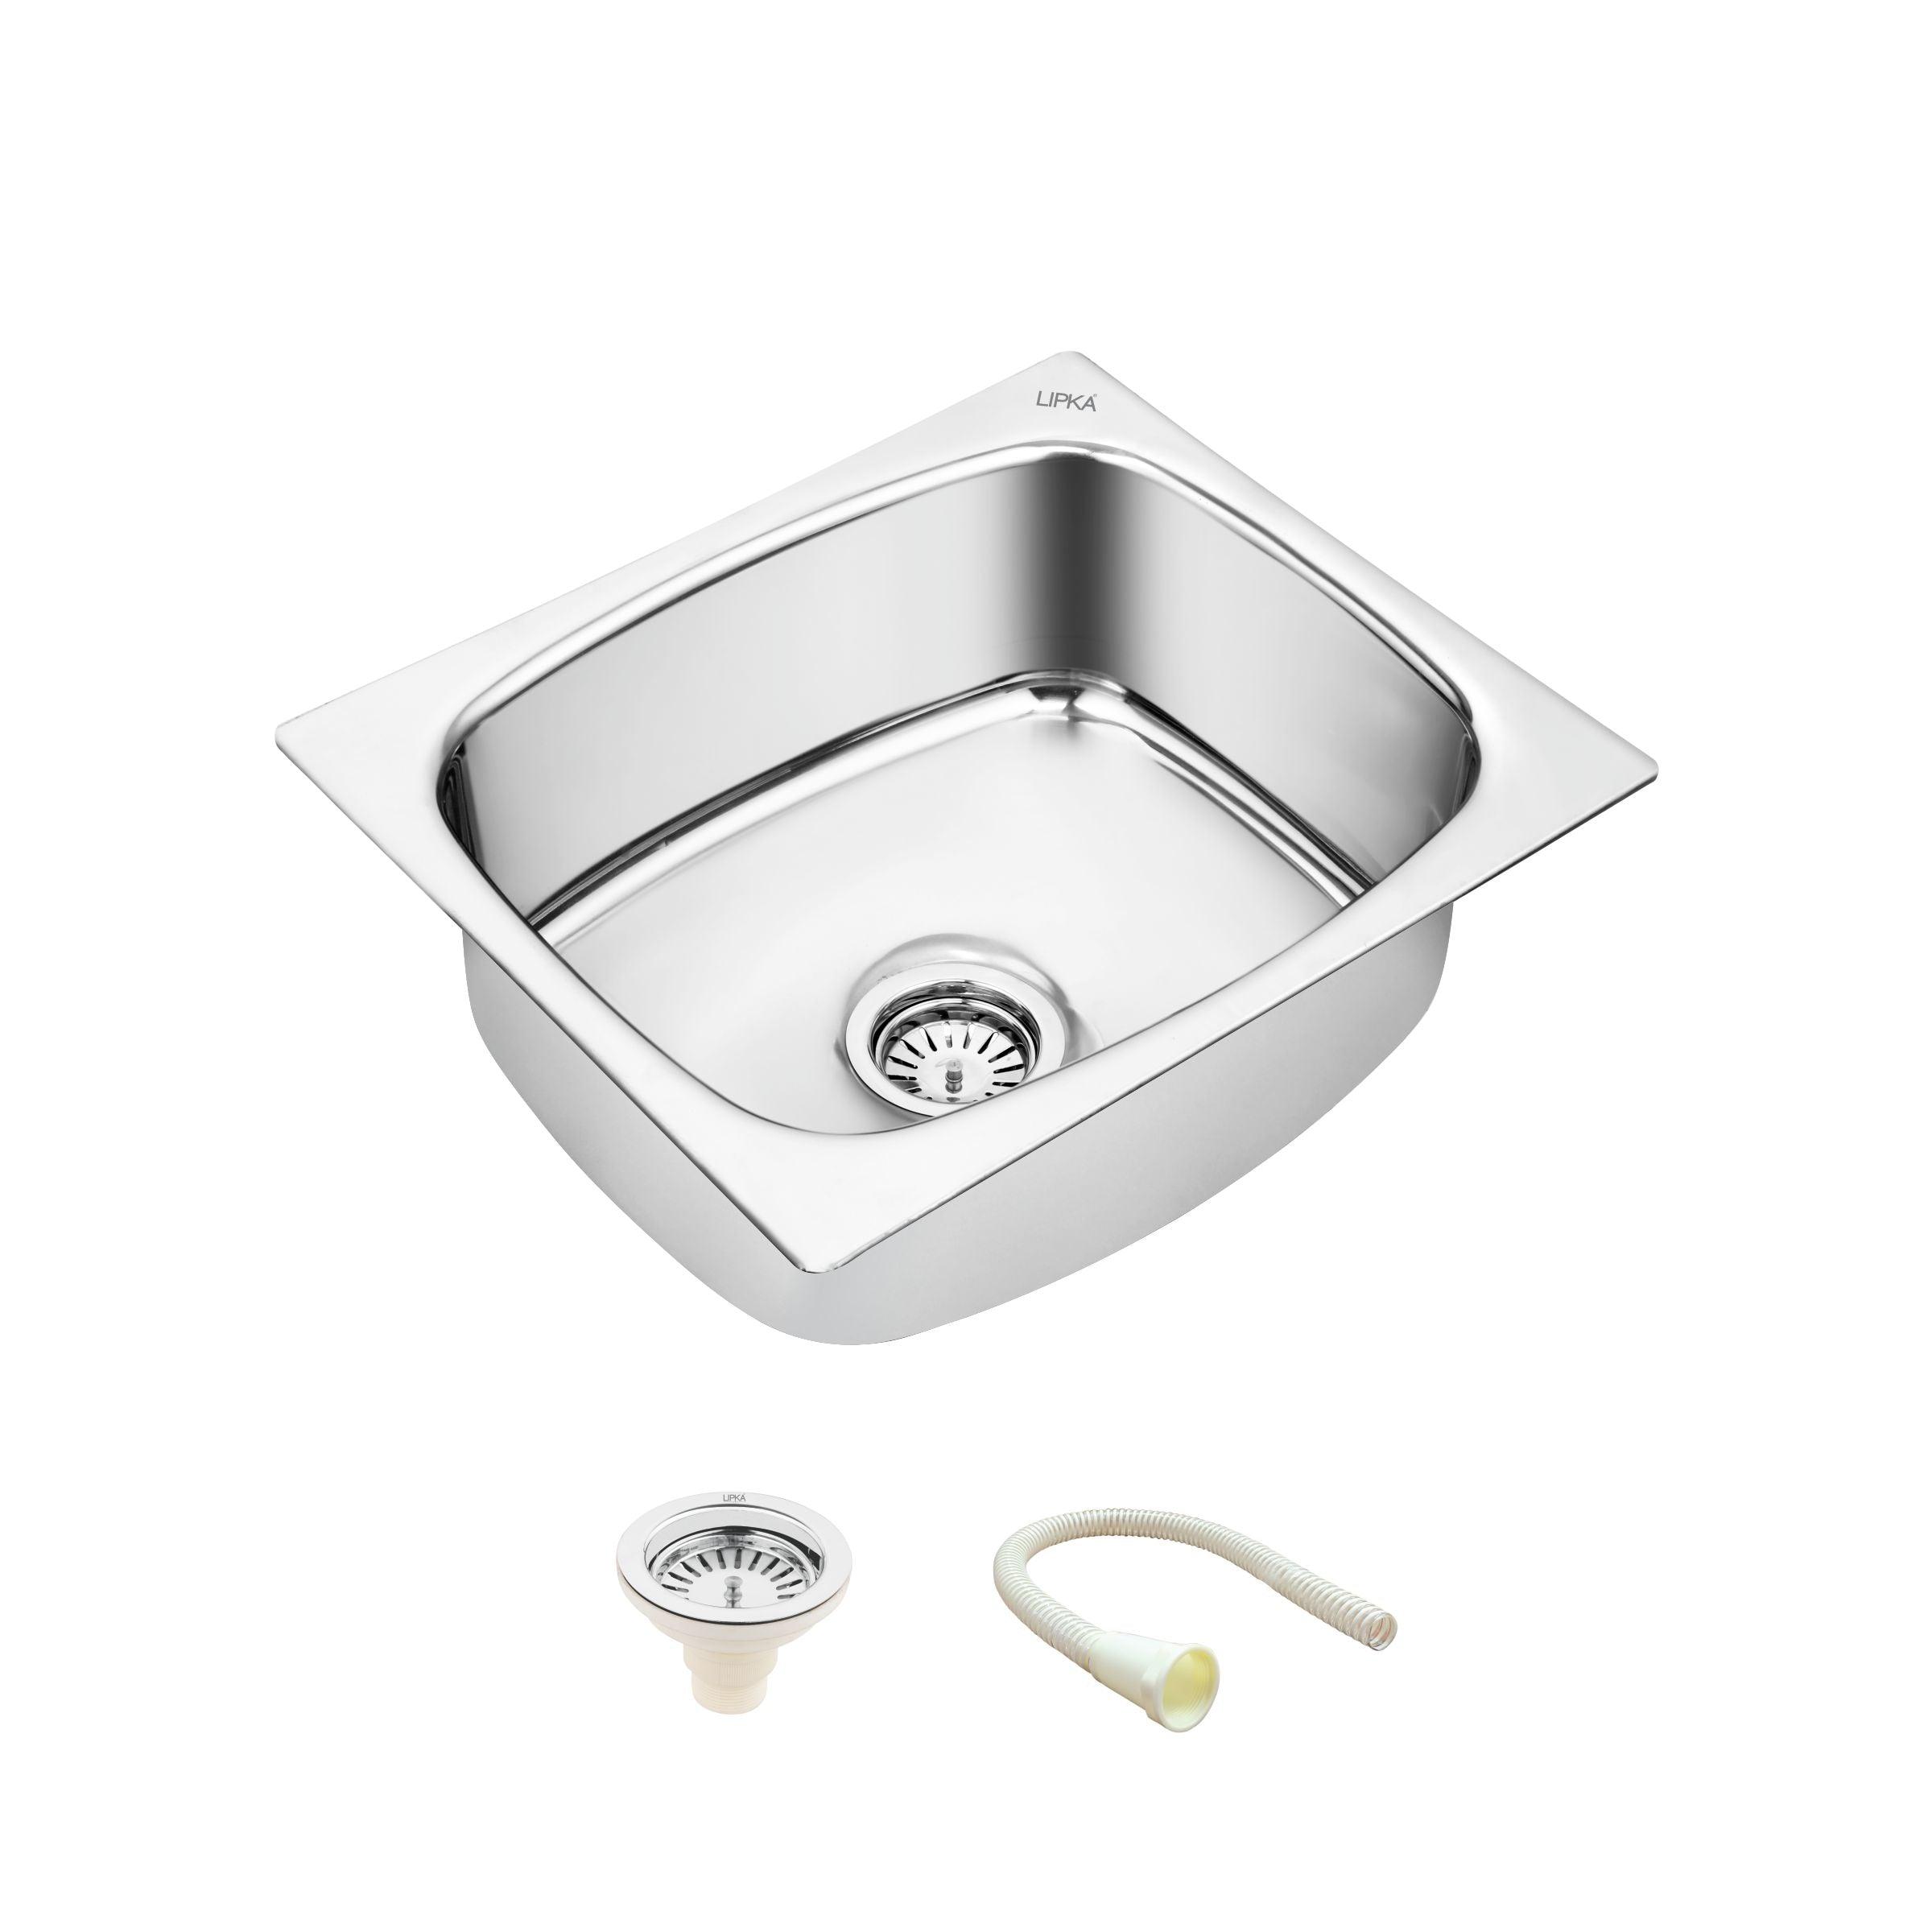 Round Single Bowl Kitchen Sink (20 x 17 x 8 Inches) - LIPKA - Lipka Home